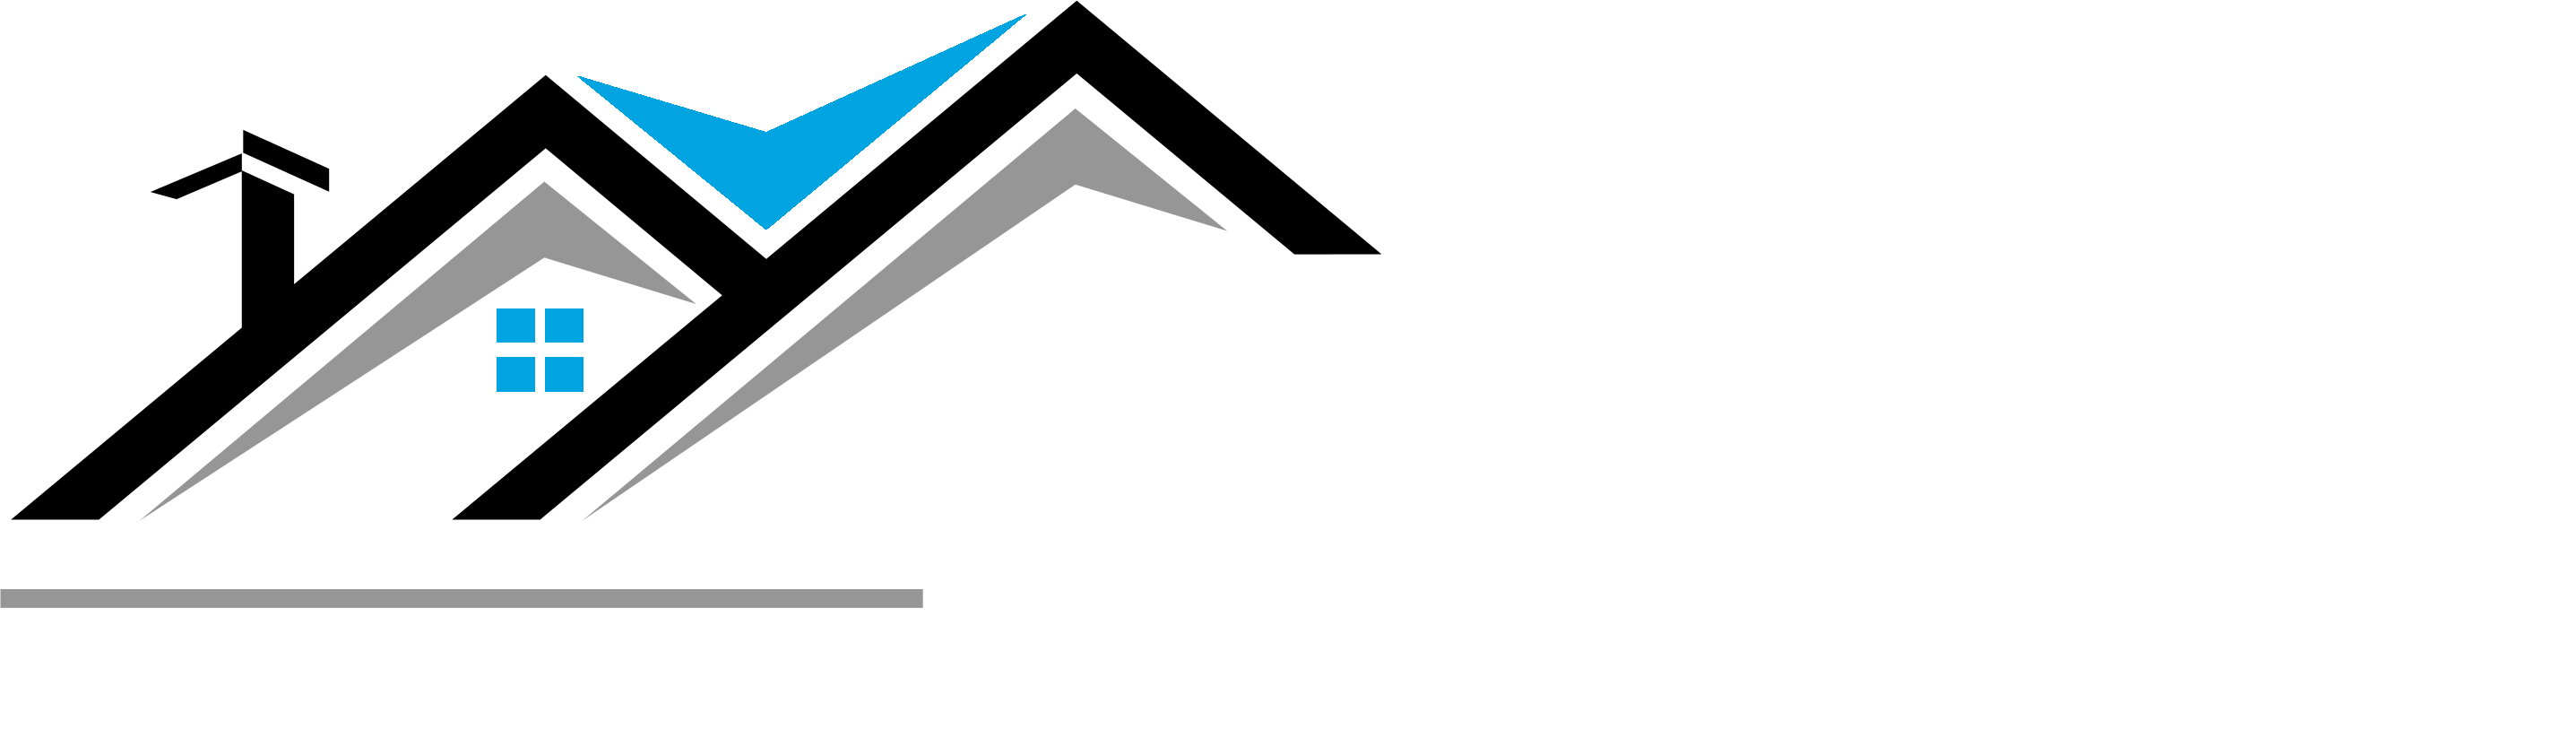 Splendor Construction